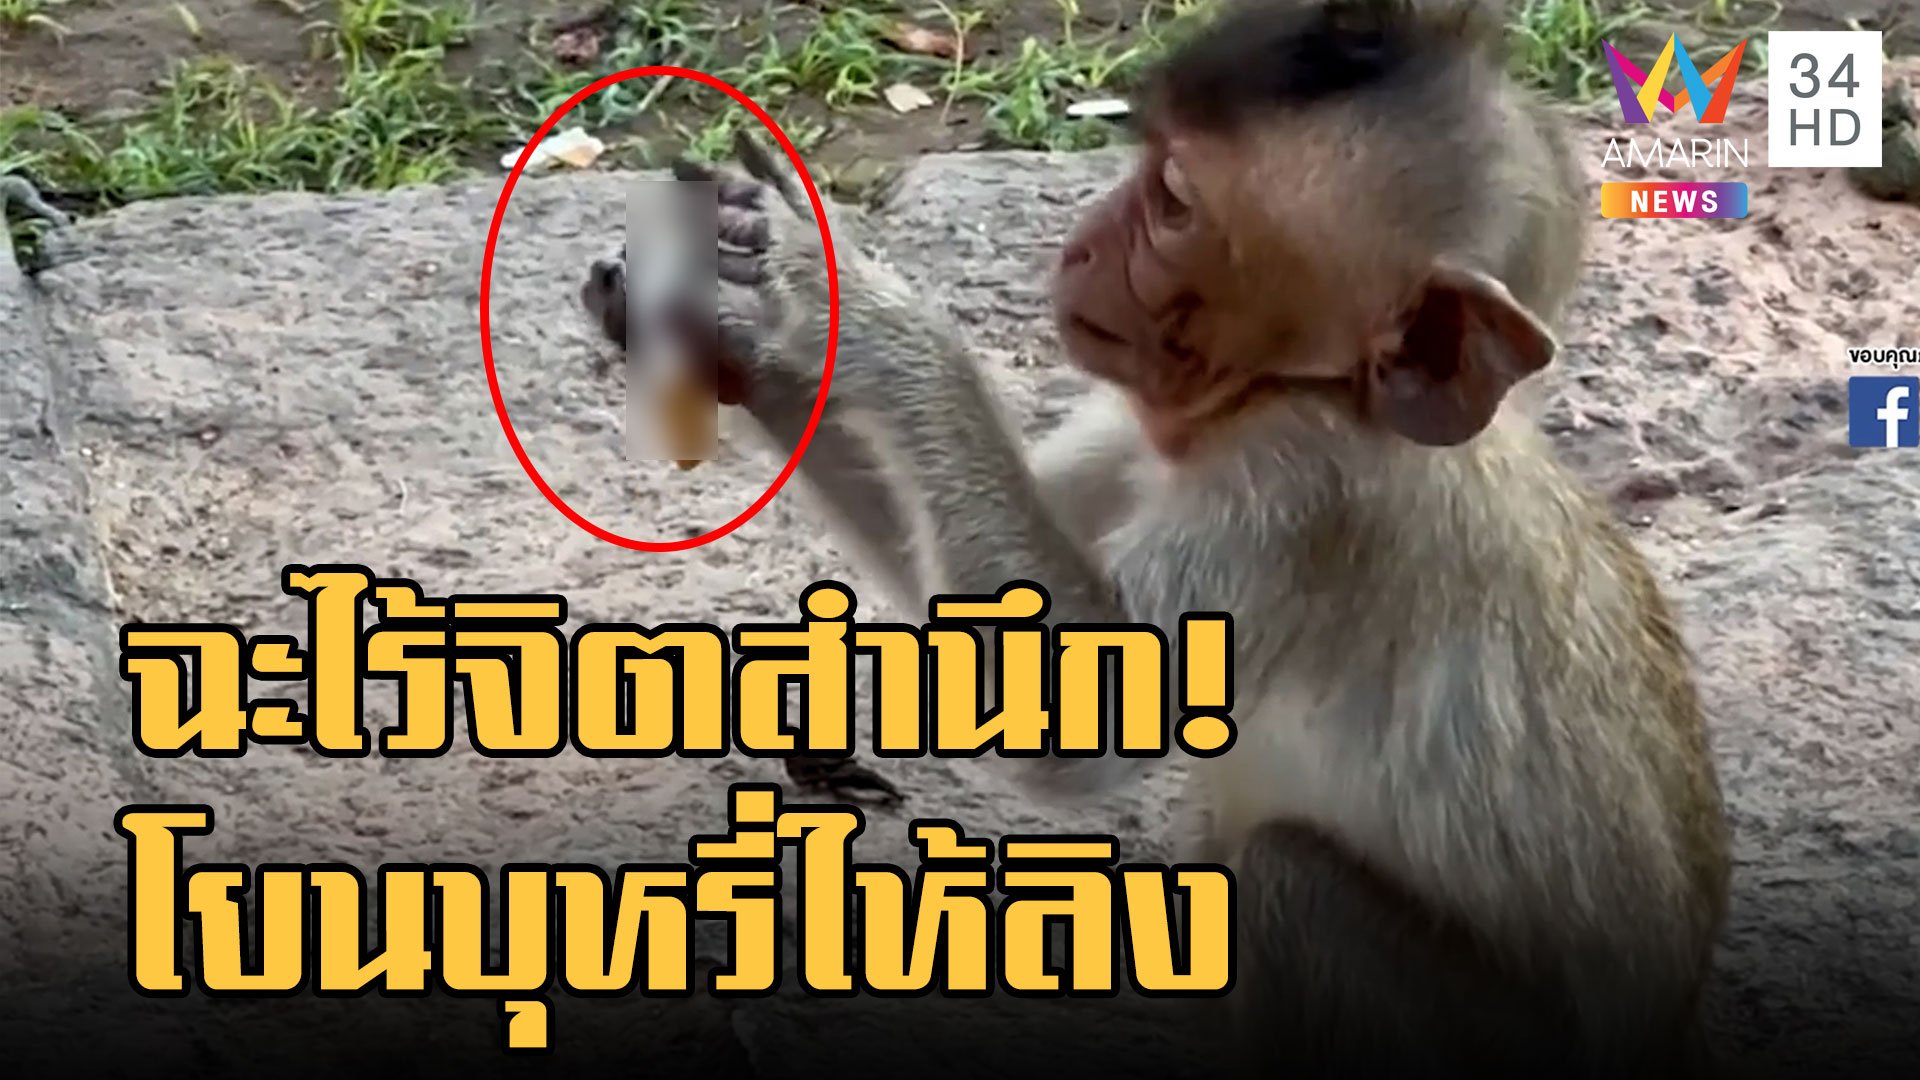 ฉะยับ นทท.มือดีจุดบุหรี่โยนให้ลูกลิง ร้อนสะดุ้งวิ่งหนี | ข่าวอรุณอมรินทร์ | 2 ธ.ค. 65 | AMARIN TVHD34